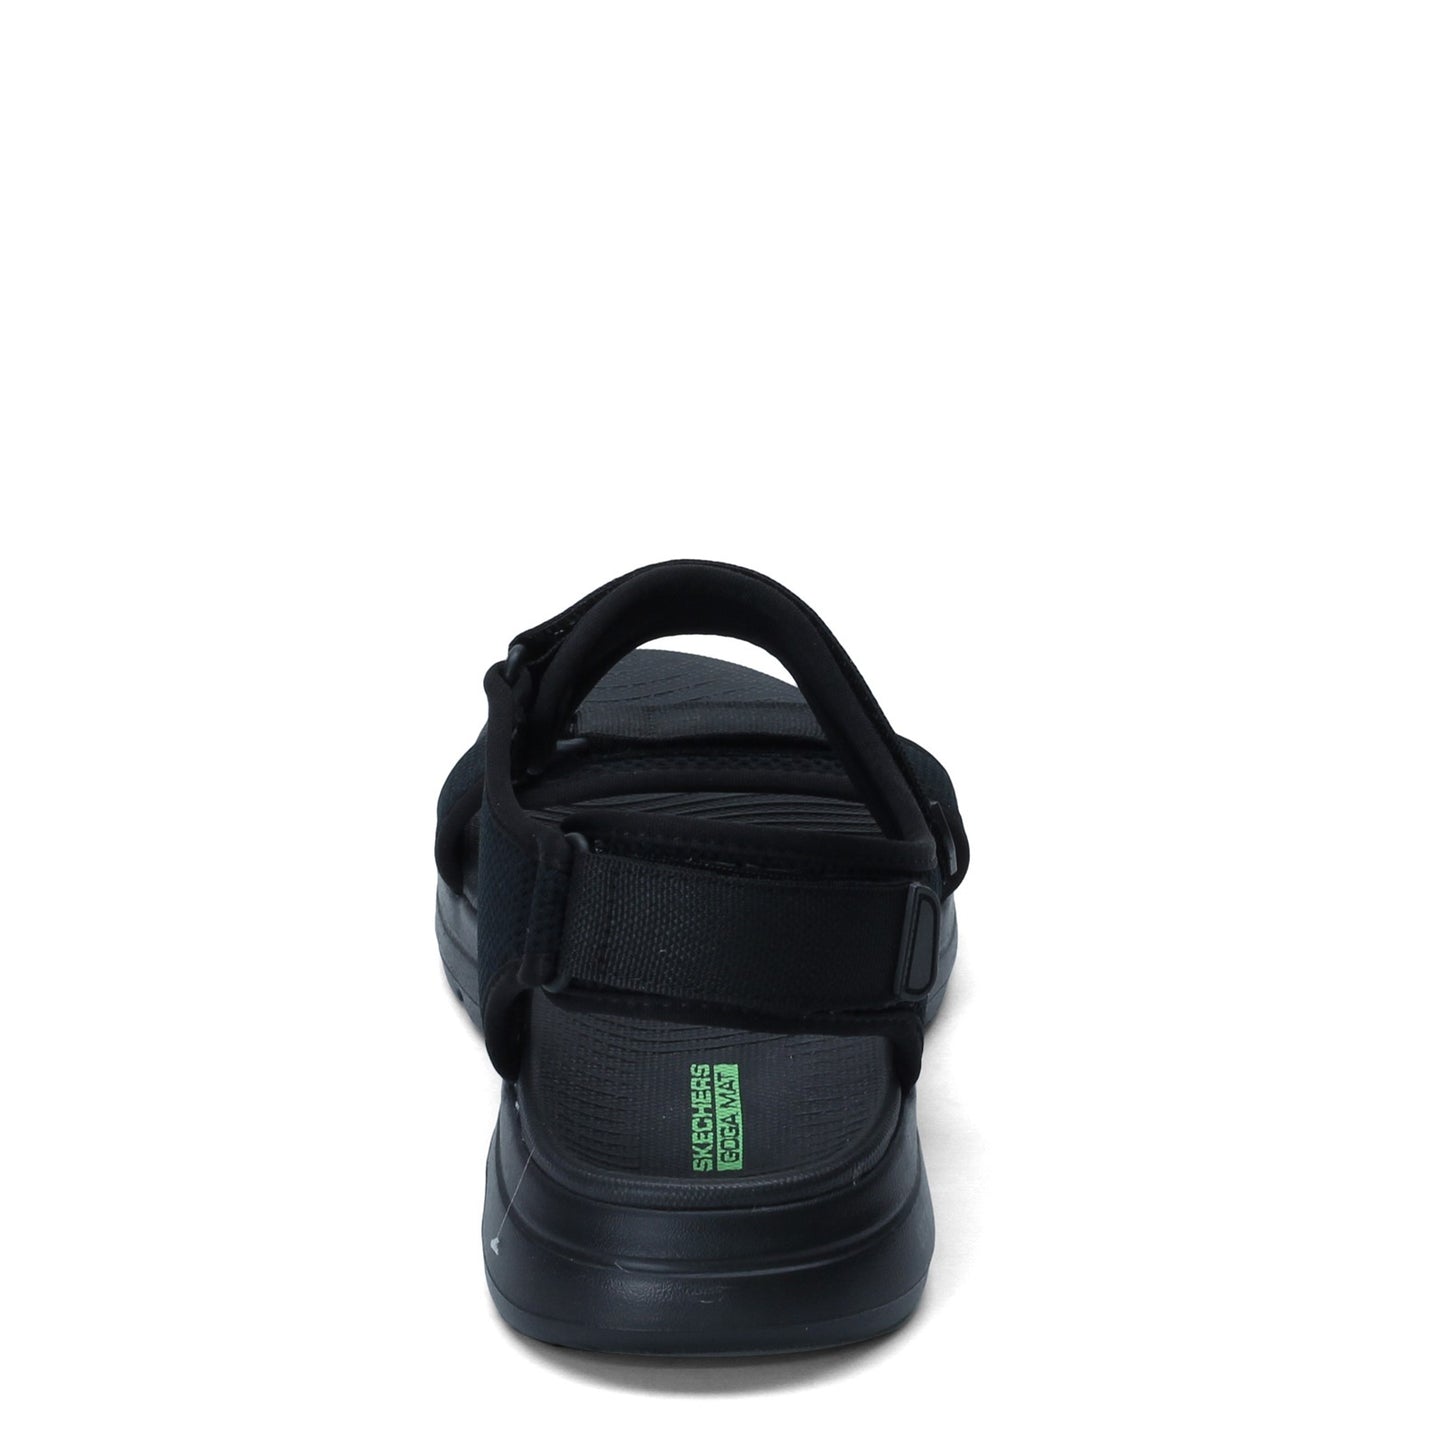 Peltz Shoes  Men's Skechers GOwalk 5 - Cabourg Sandal BLACK 229003-BBK